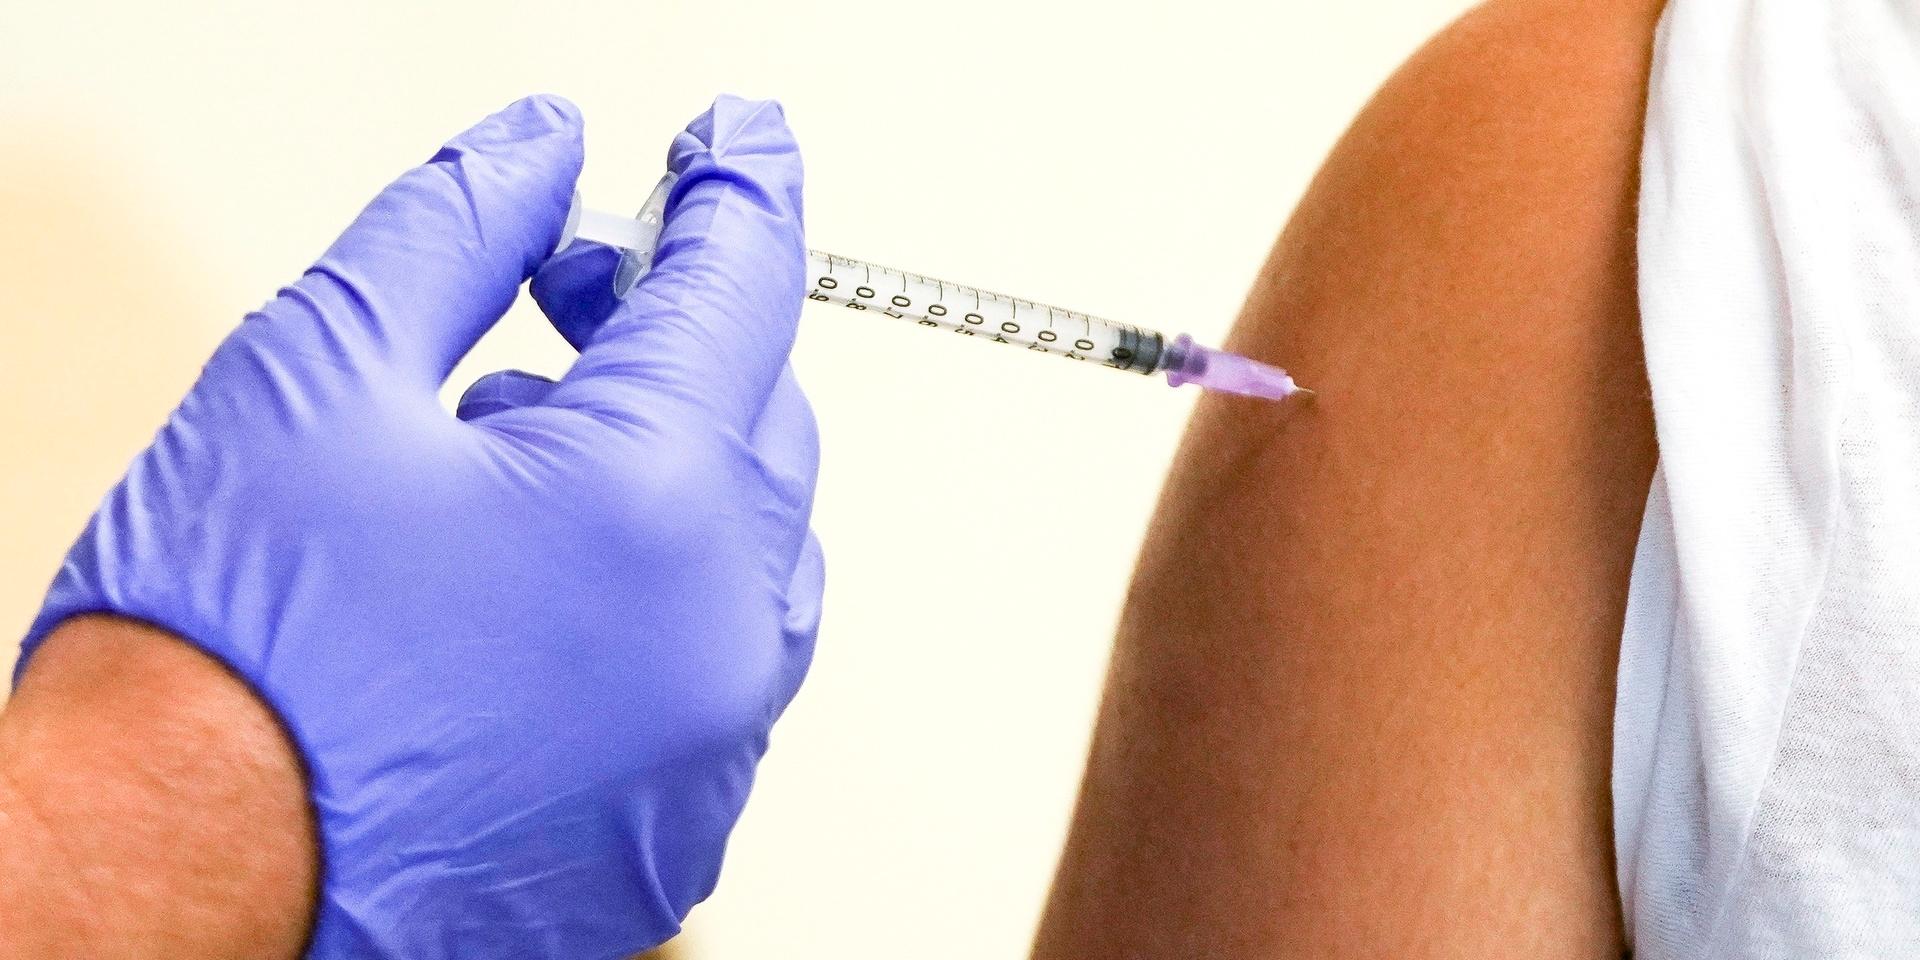 Är det rätt att vaccinera barn mot en sjukdom de väldigt sällan blir sjuka av?